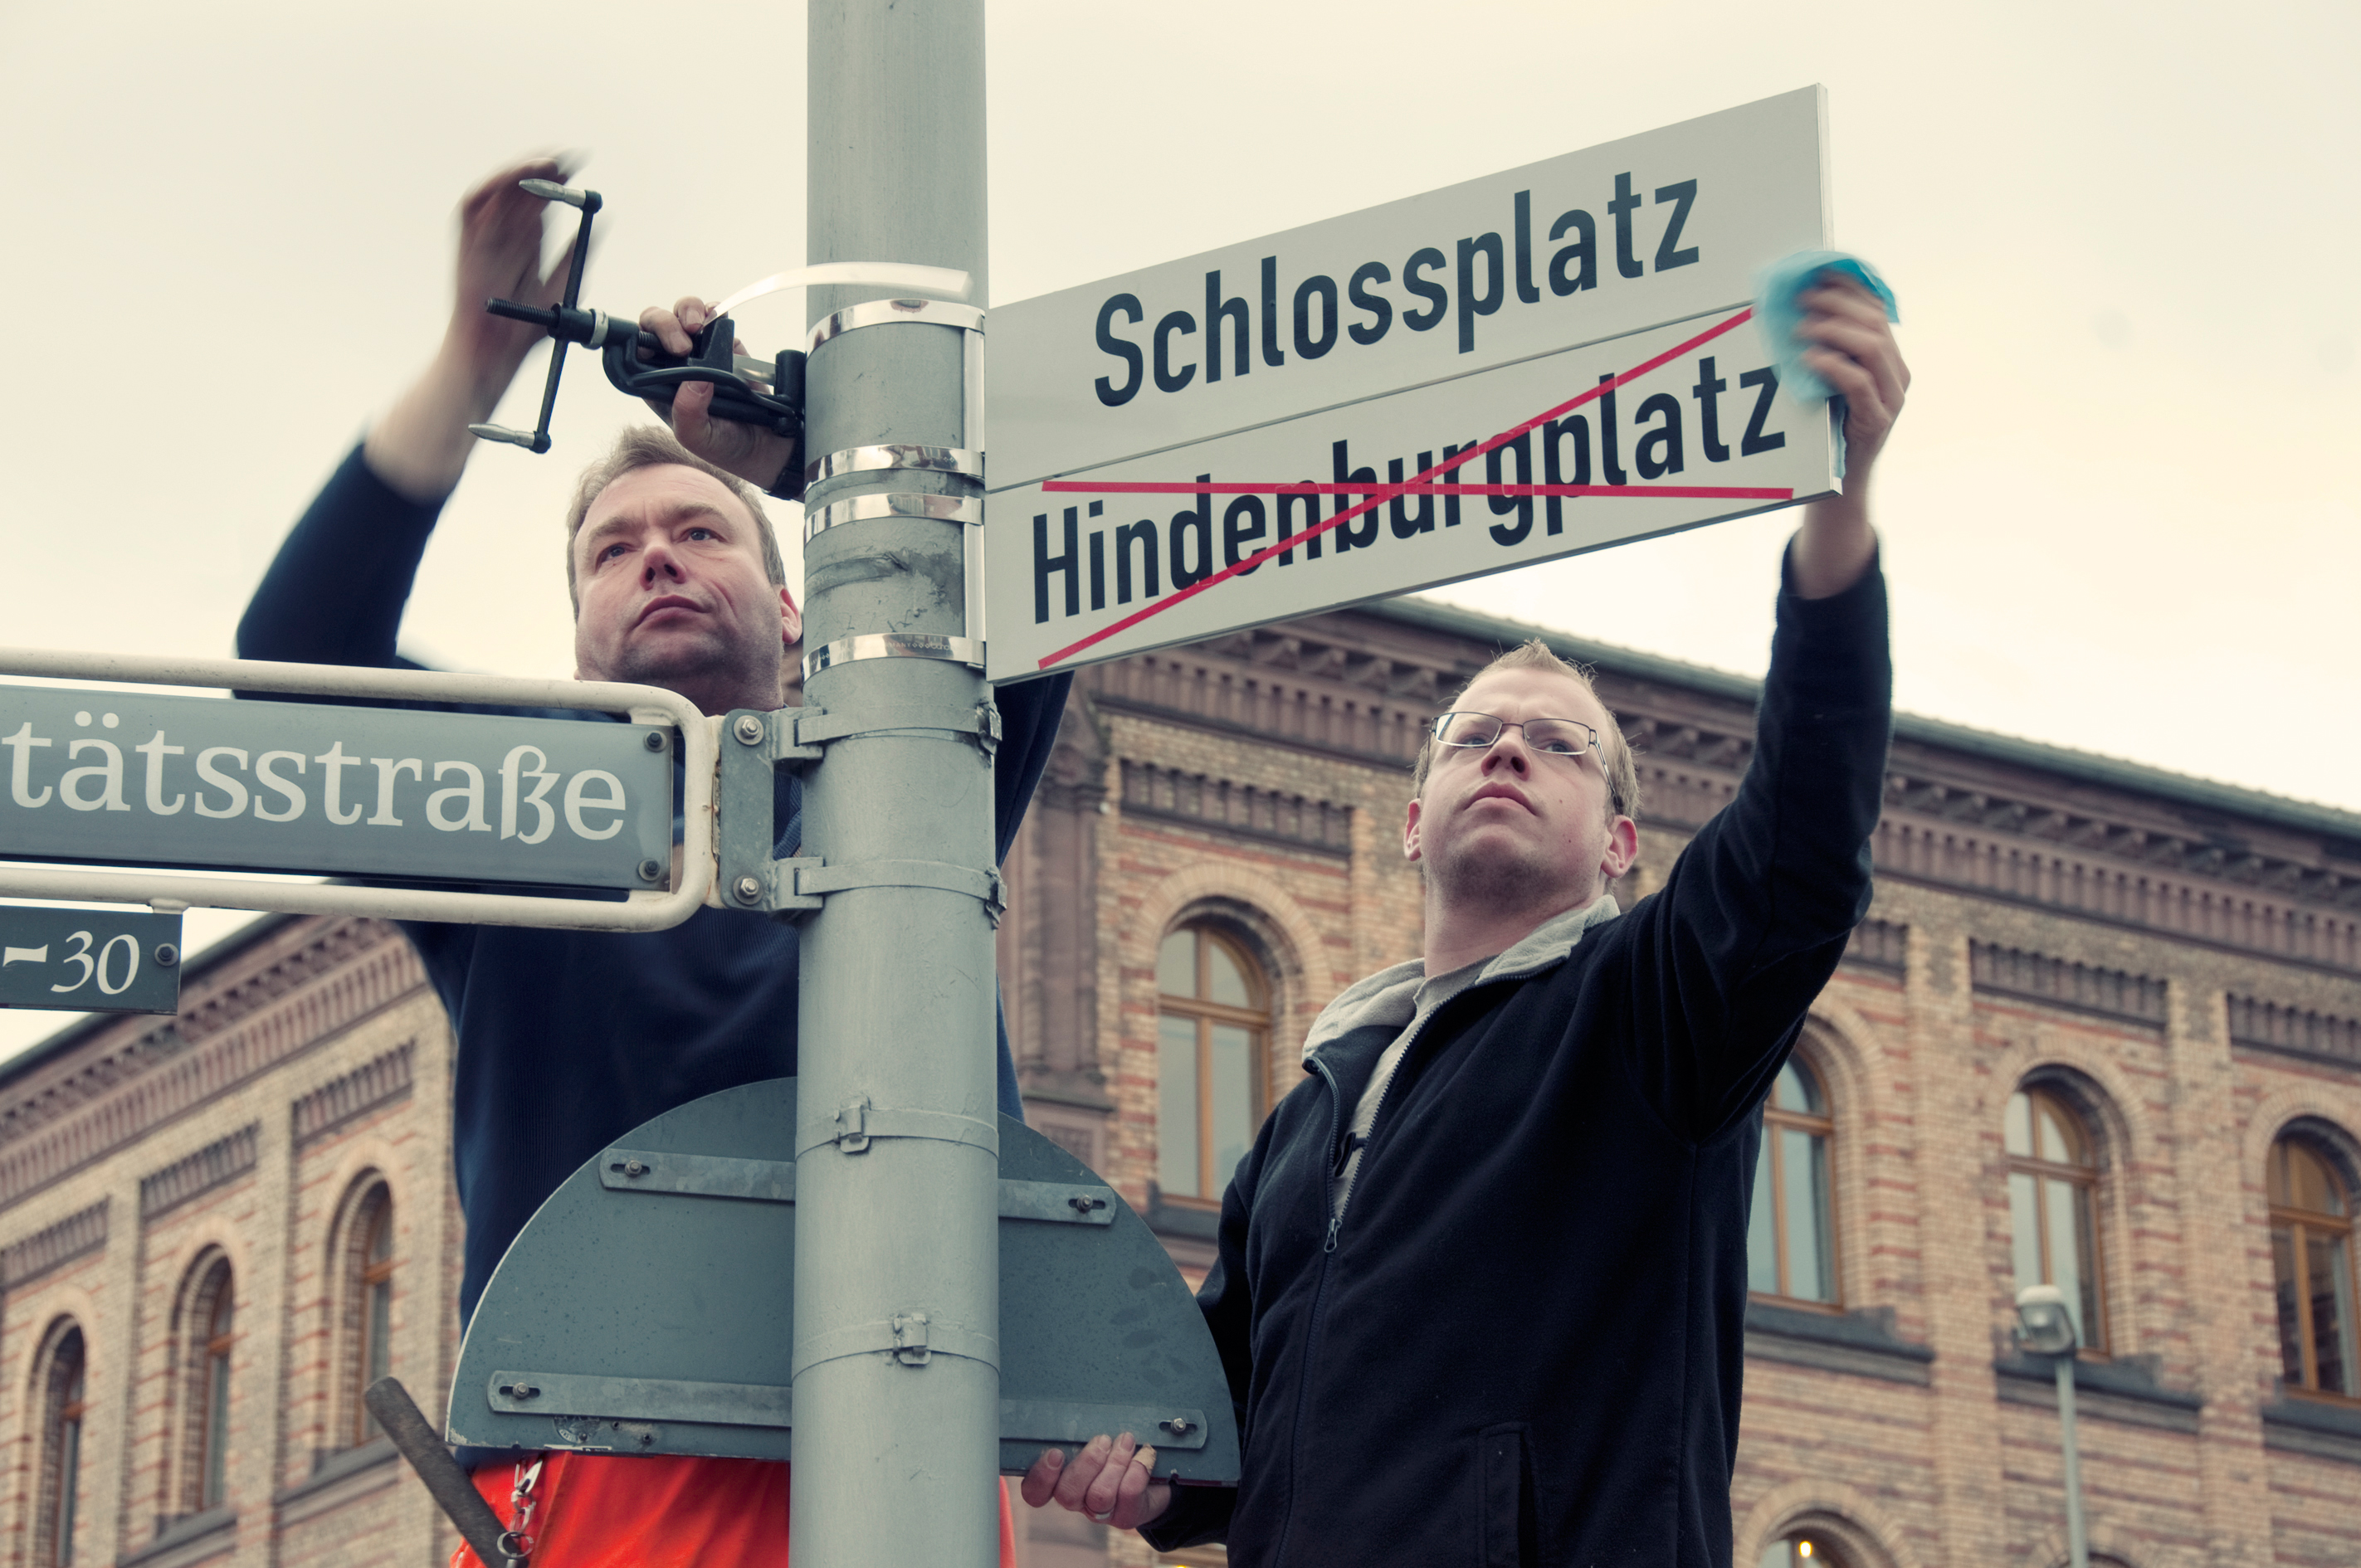 Zwei Männer tauschen Straßenschilder gegeneinander aus, Schlossplatz neu, Hindenburgplatz durchgestrichen